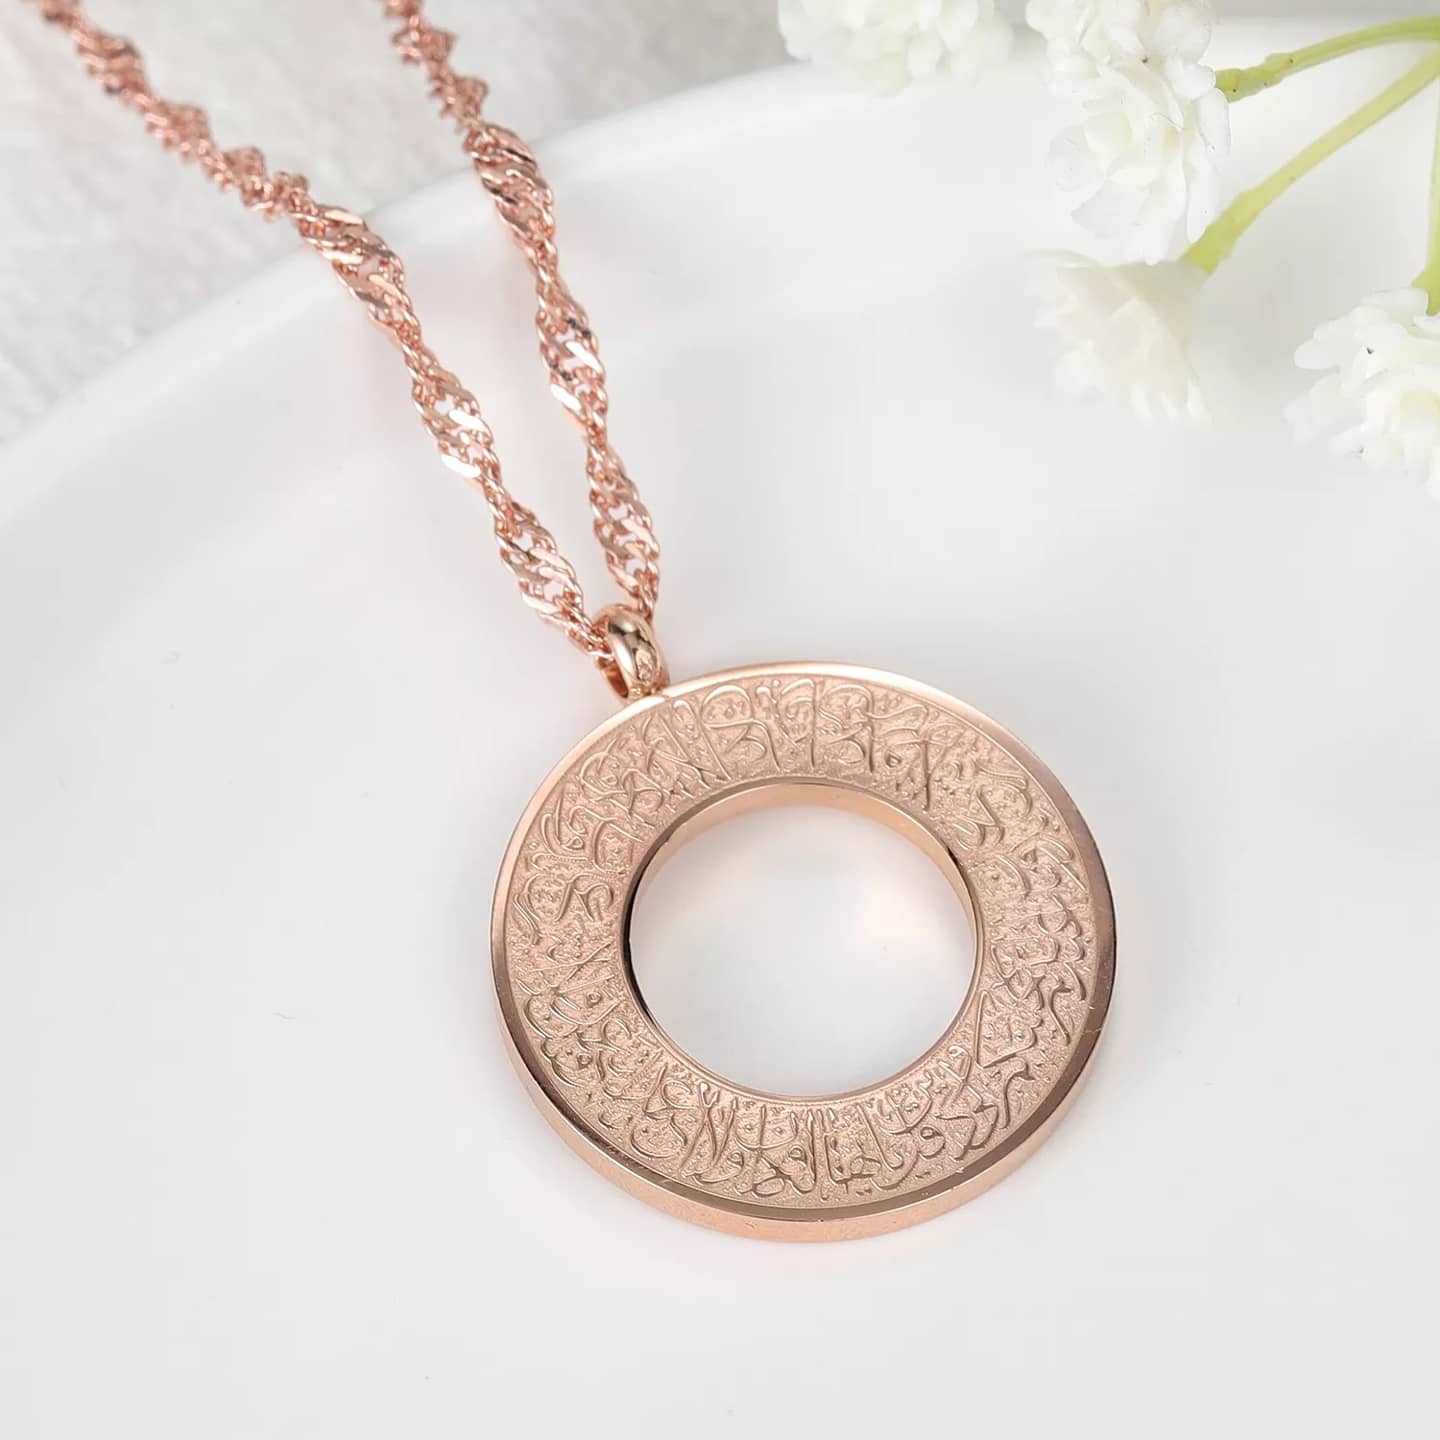 DEEN - Surah Al Kafirun - Islamic Arabic Gift Motivational Inspirational Pendant Necklace - Made to Order